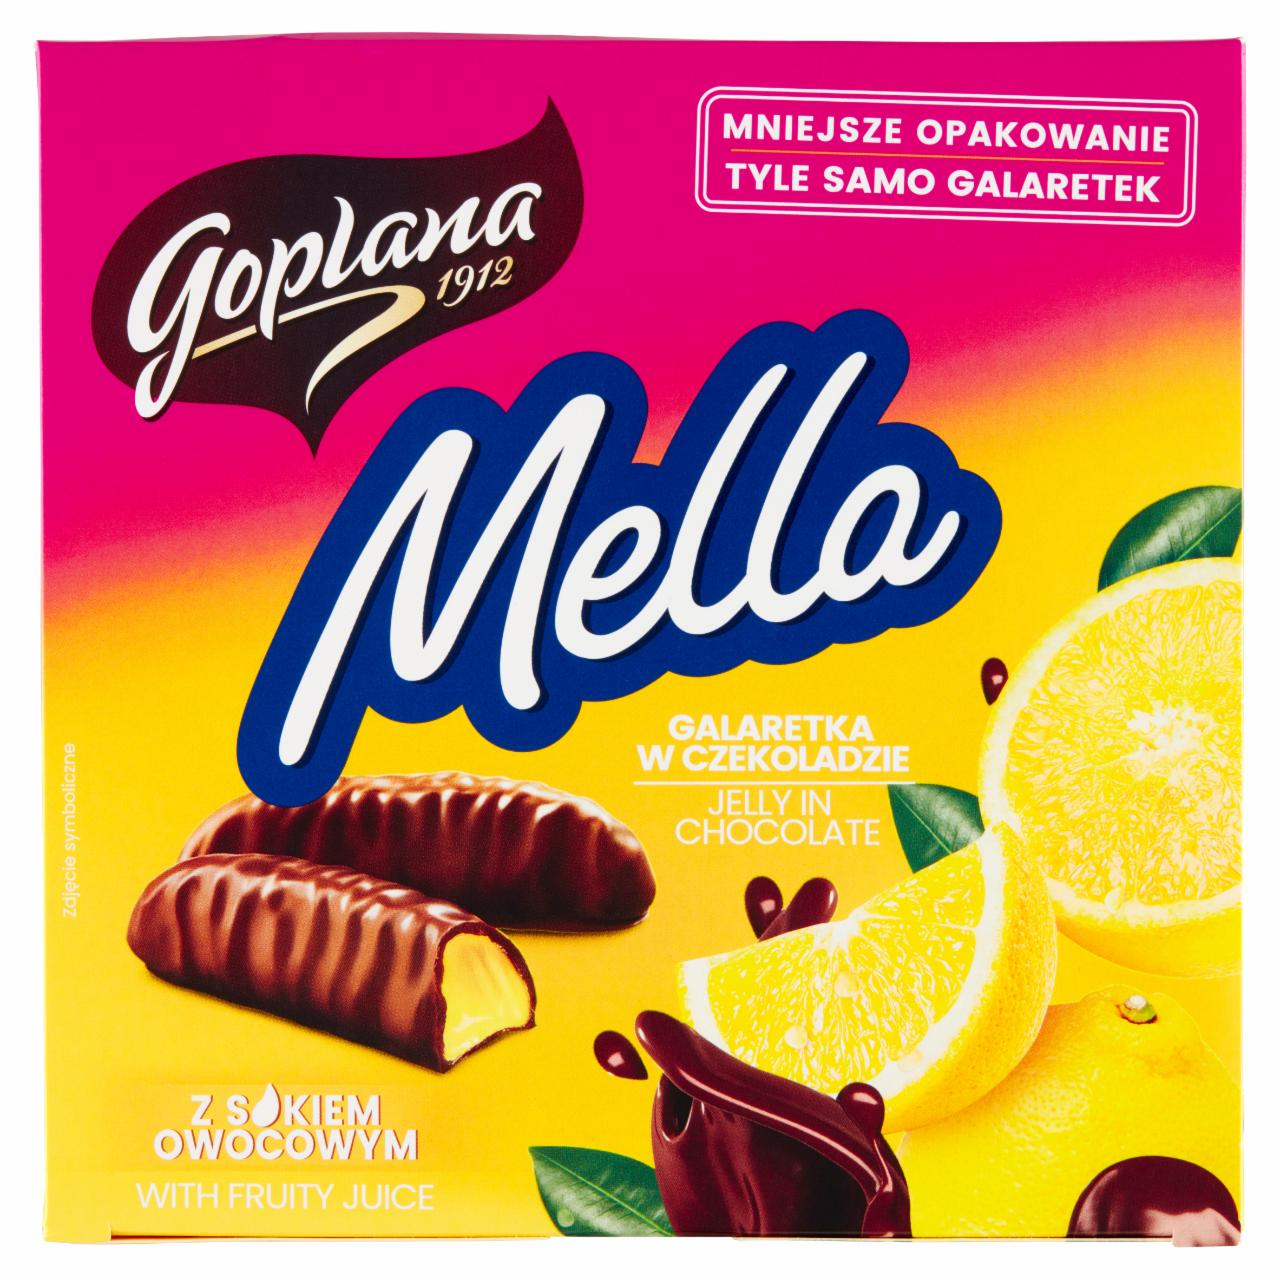 Zdjęcia - Goplana Mella Galaretka w czekoladzie o smaku cytrynowym 190 g